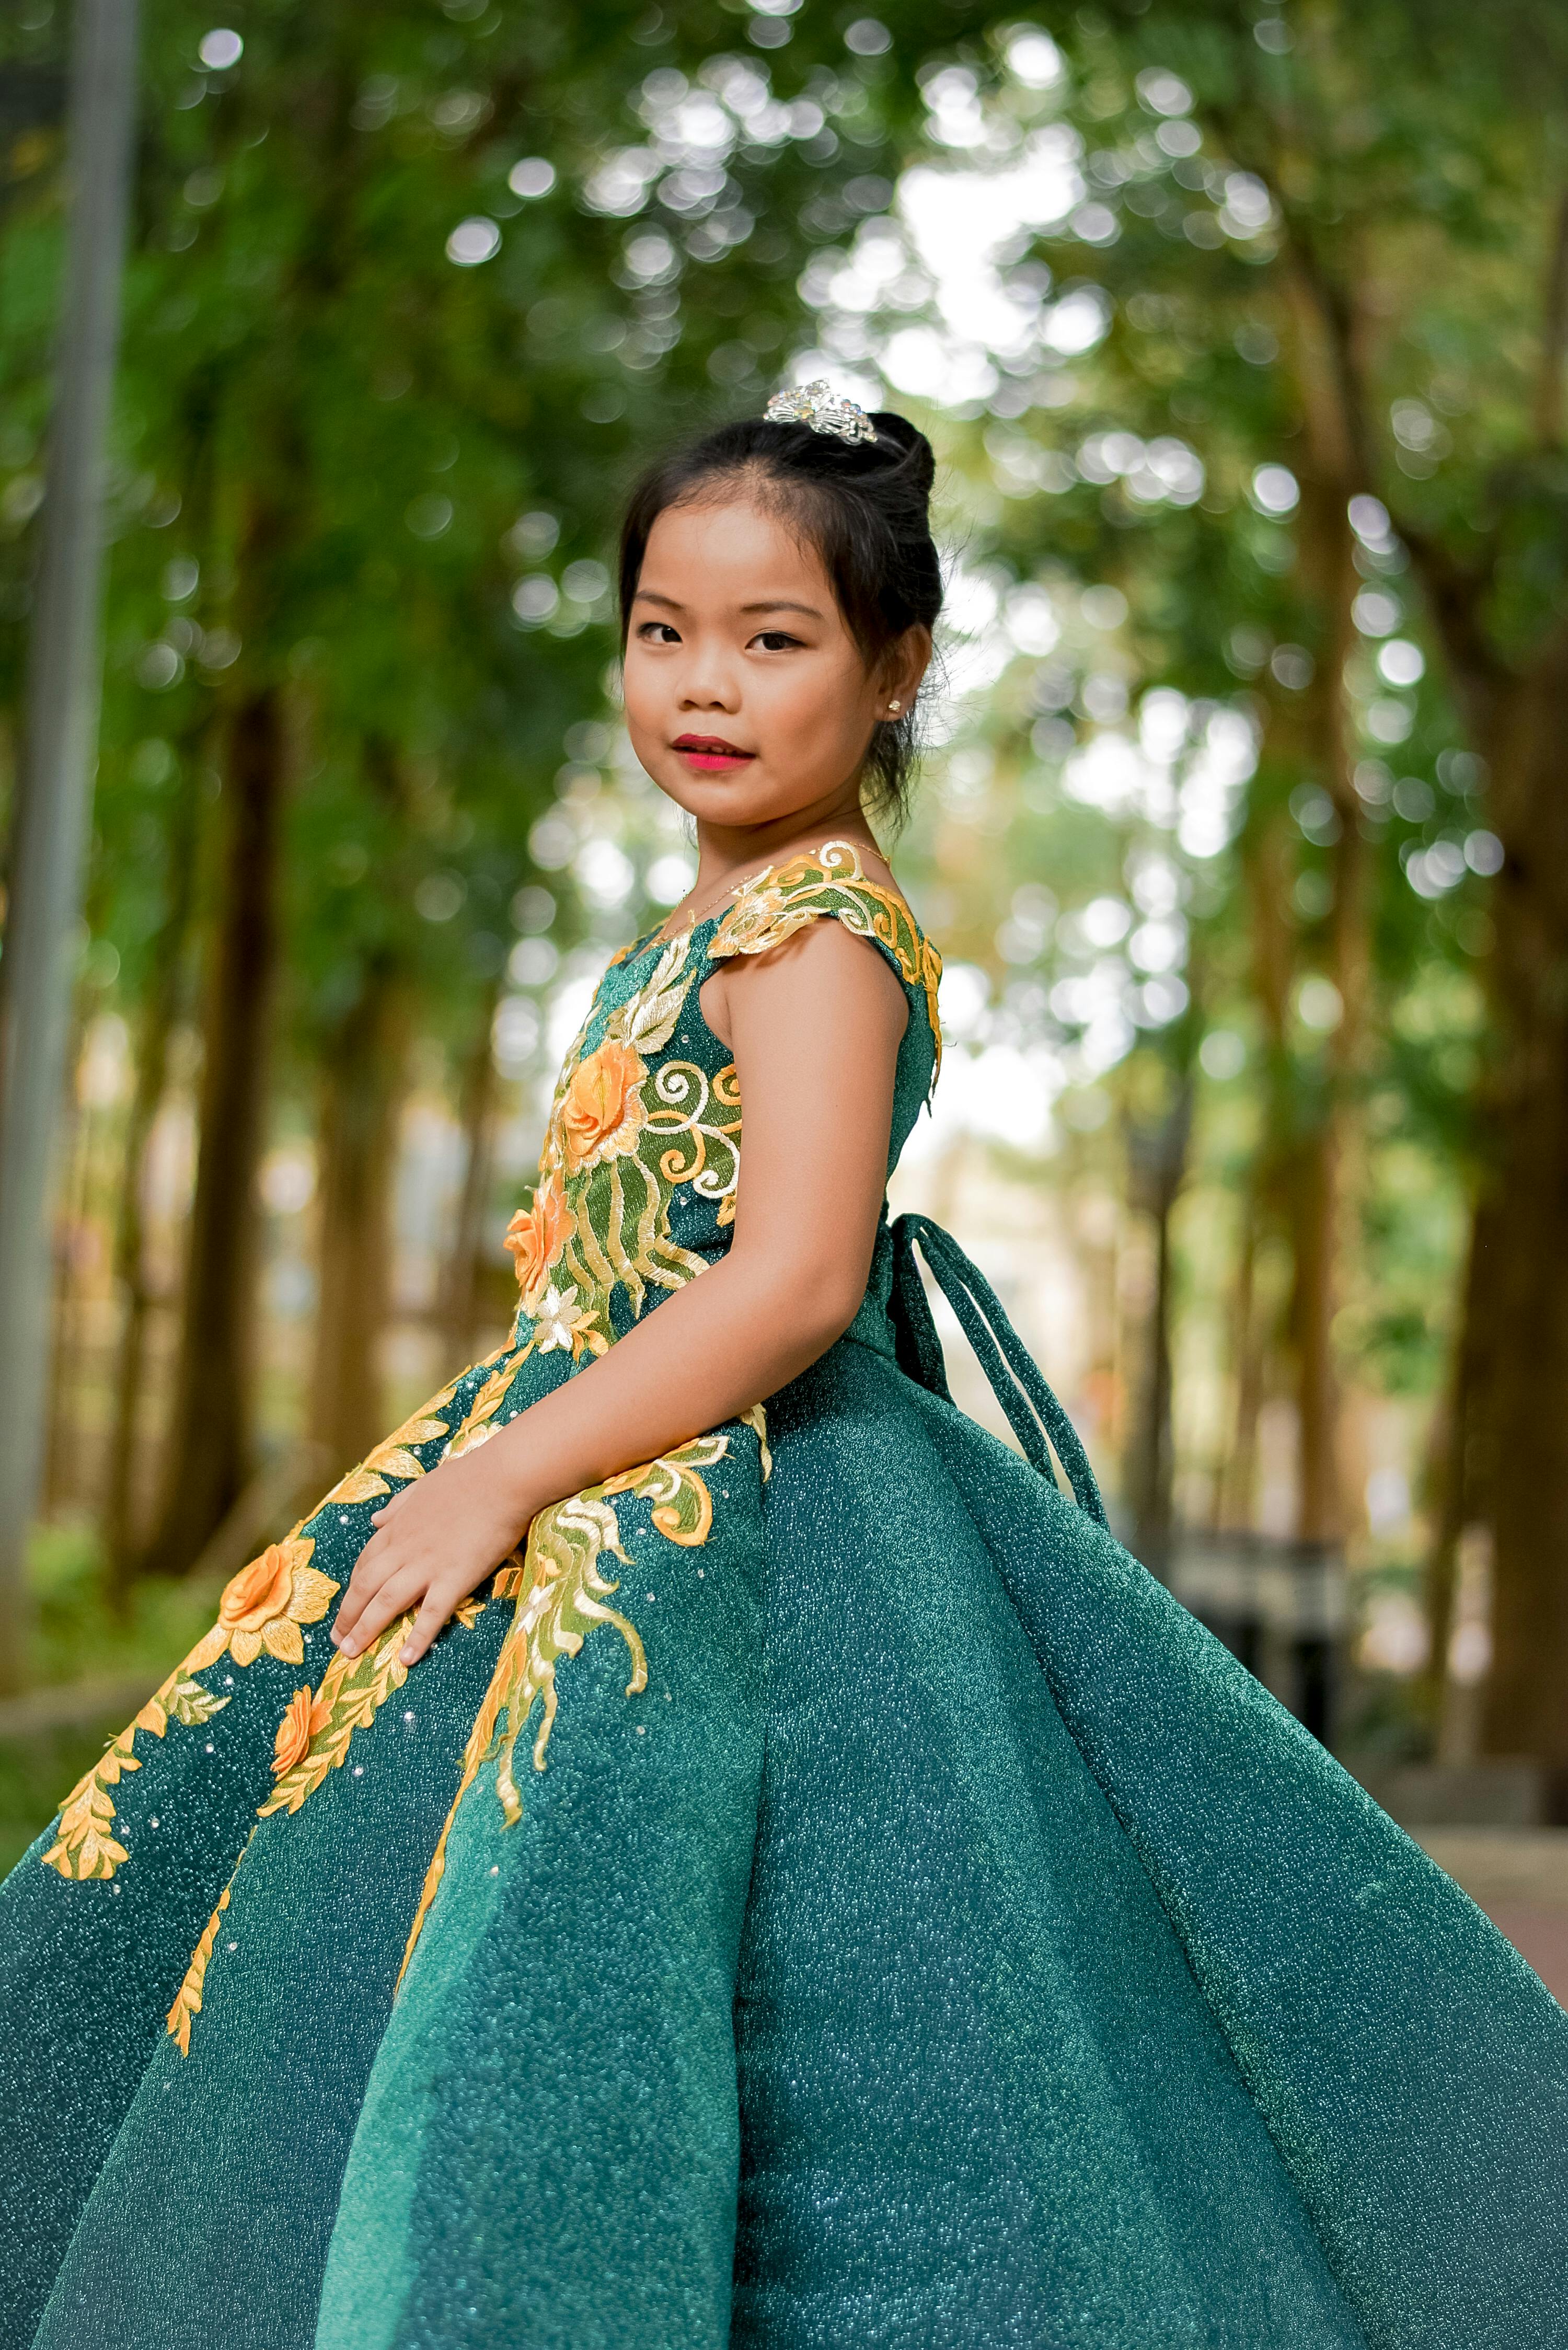 The 19 Best Boho Flower Girl Dresses of 2022